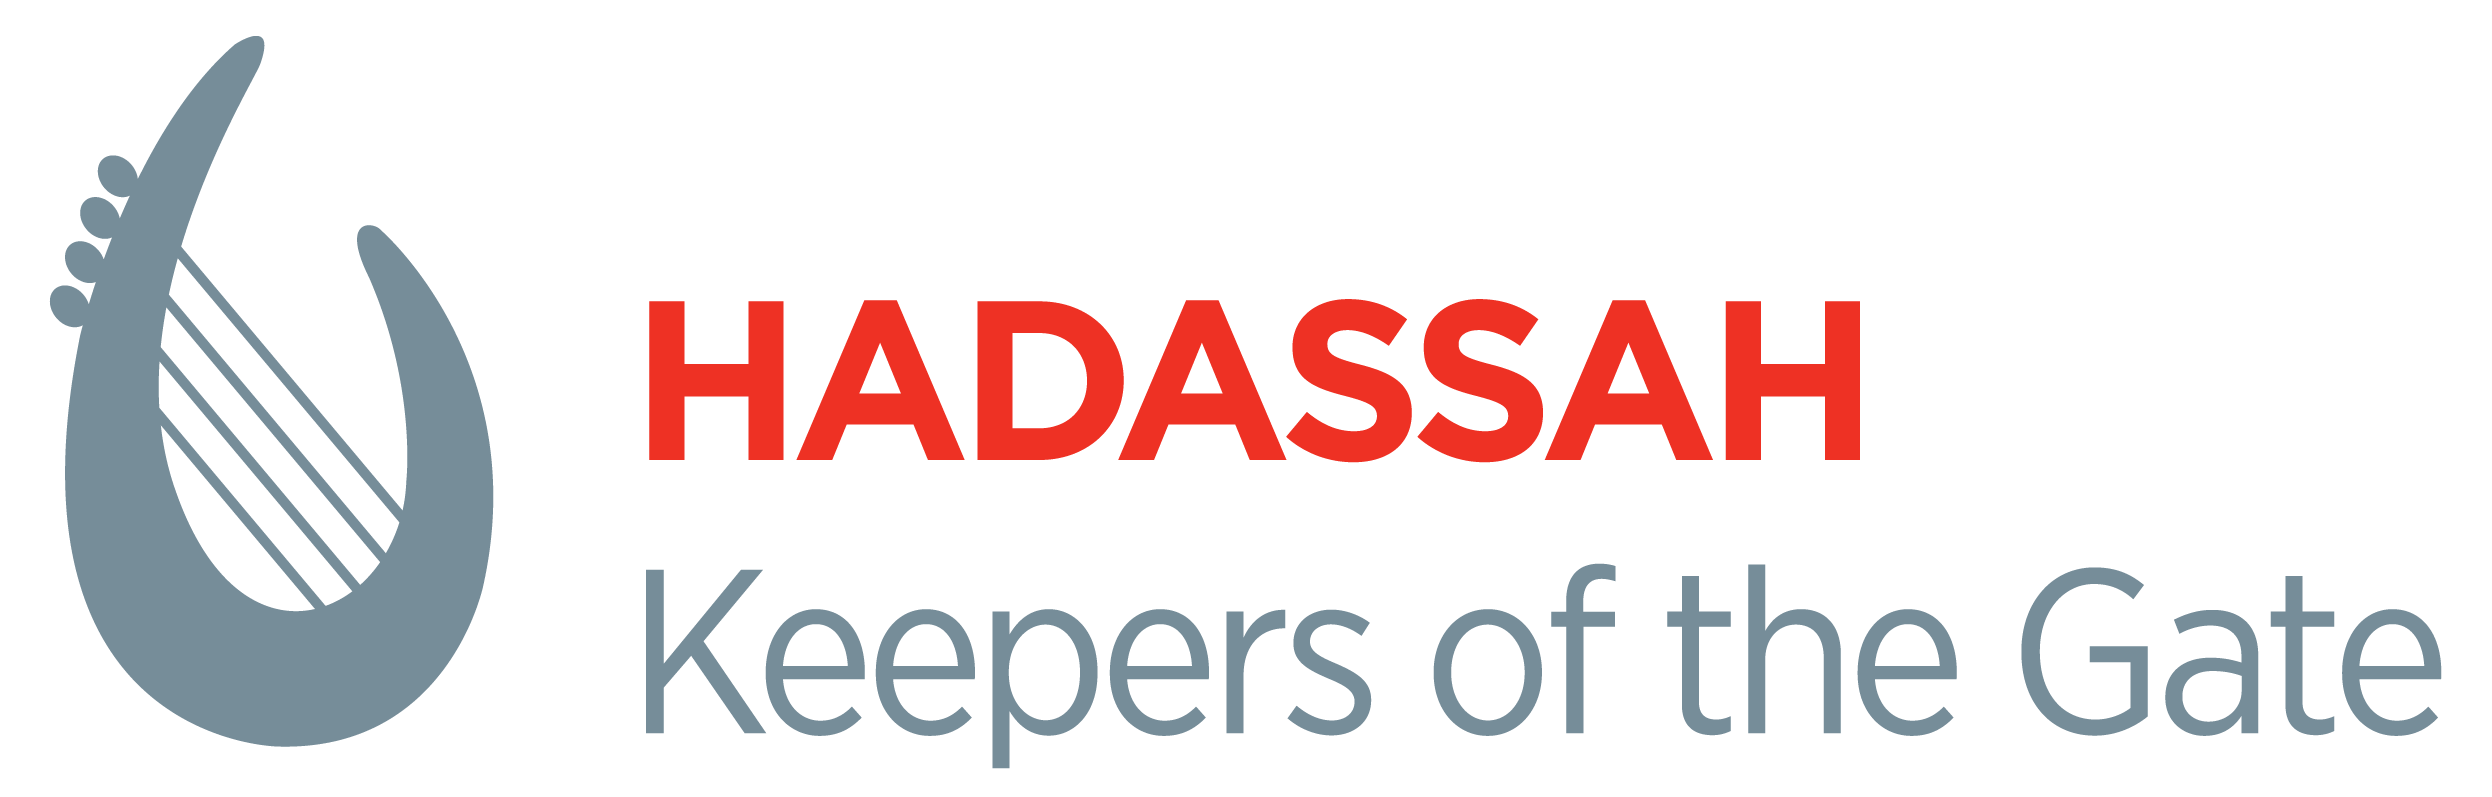 Hadassah Logo - Hadassah Greater Miami. Hadassah, The Women's Zionist Org of America